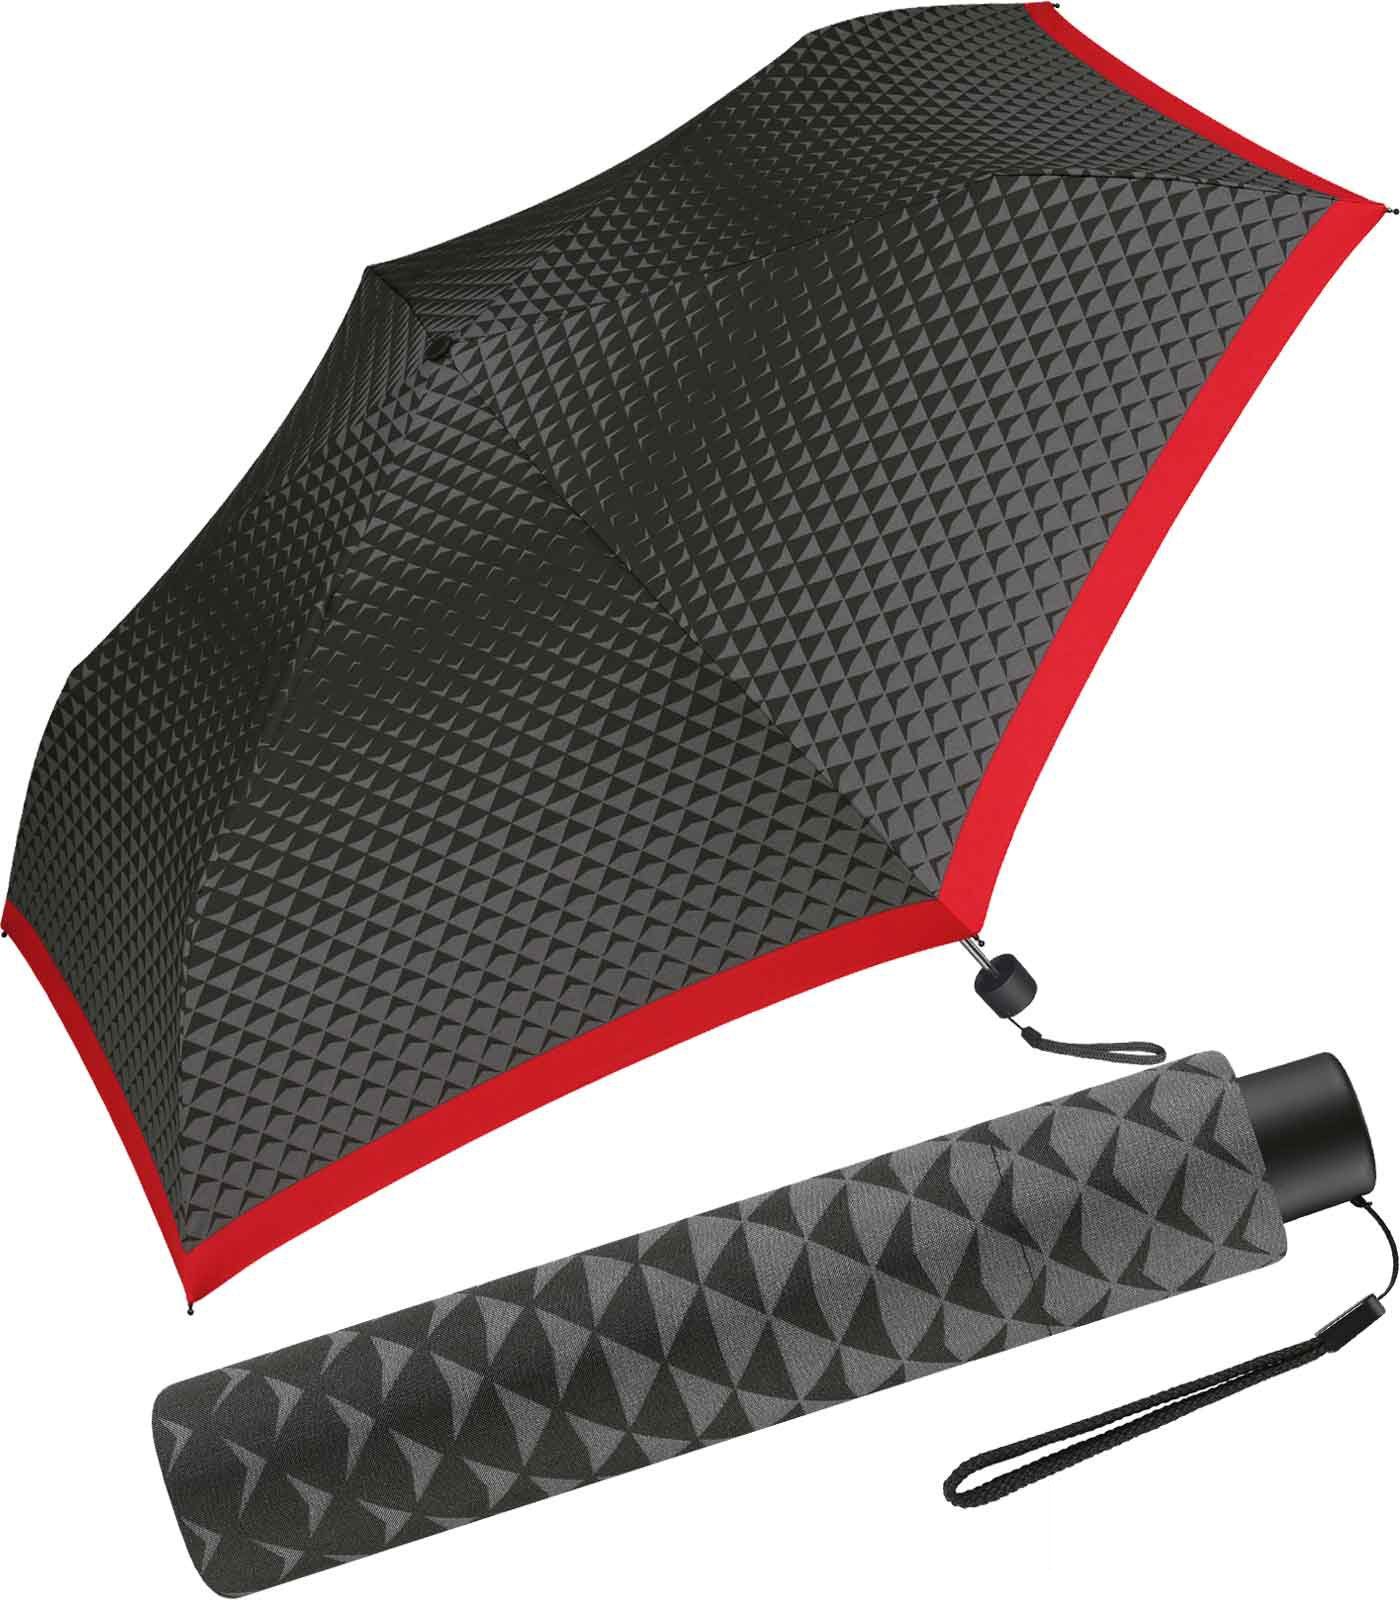 mit Handöffner, Damen-Taschenschirm Cardin mit Dreiecke-Muster schlanker Borte Pierre und roter Langregenschirm